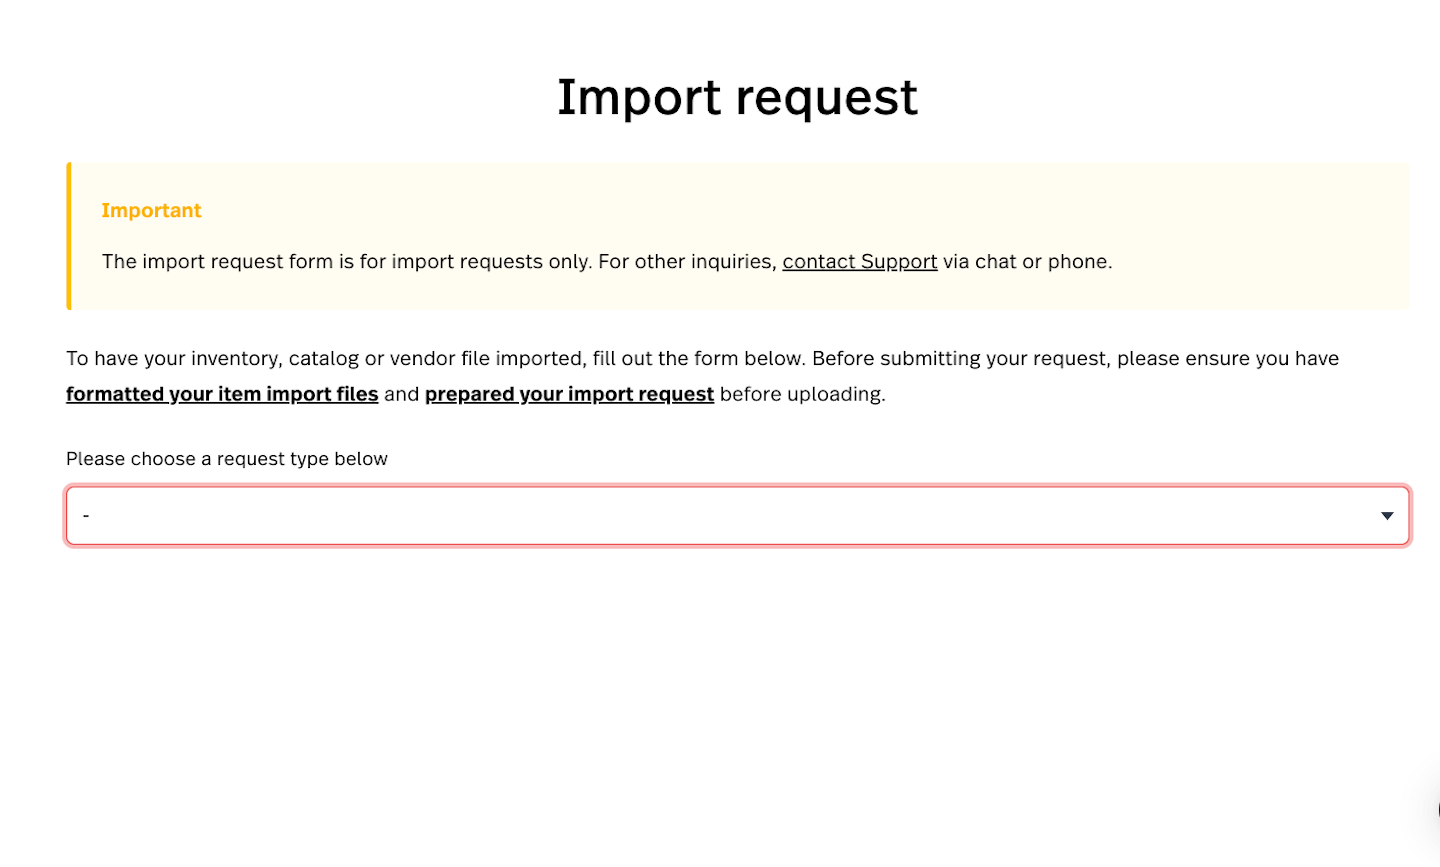 Formulaire de demande d’importation de Lightspeed présentant le menu déroulant pour sélectionner le type d’importation.